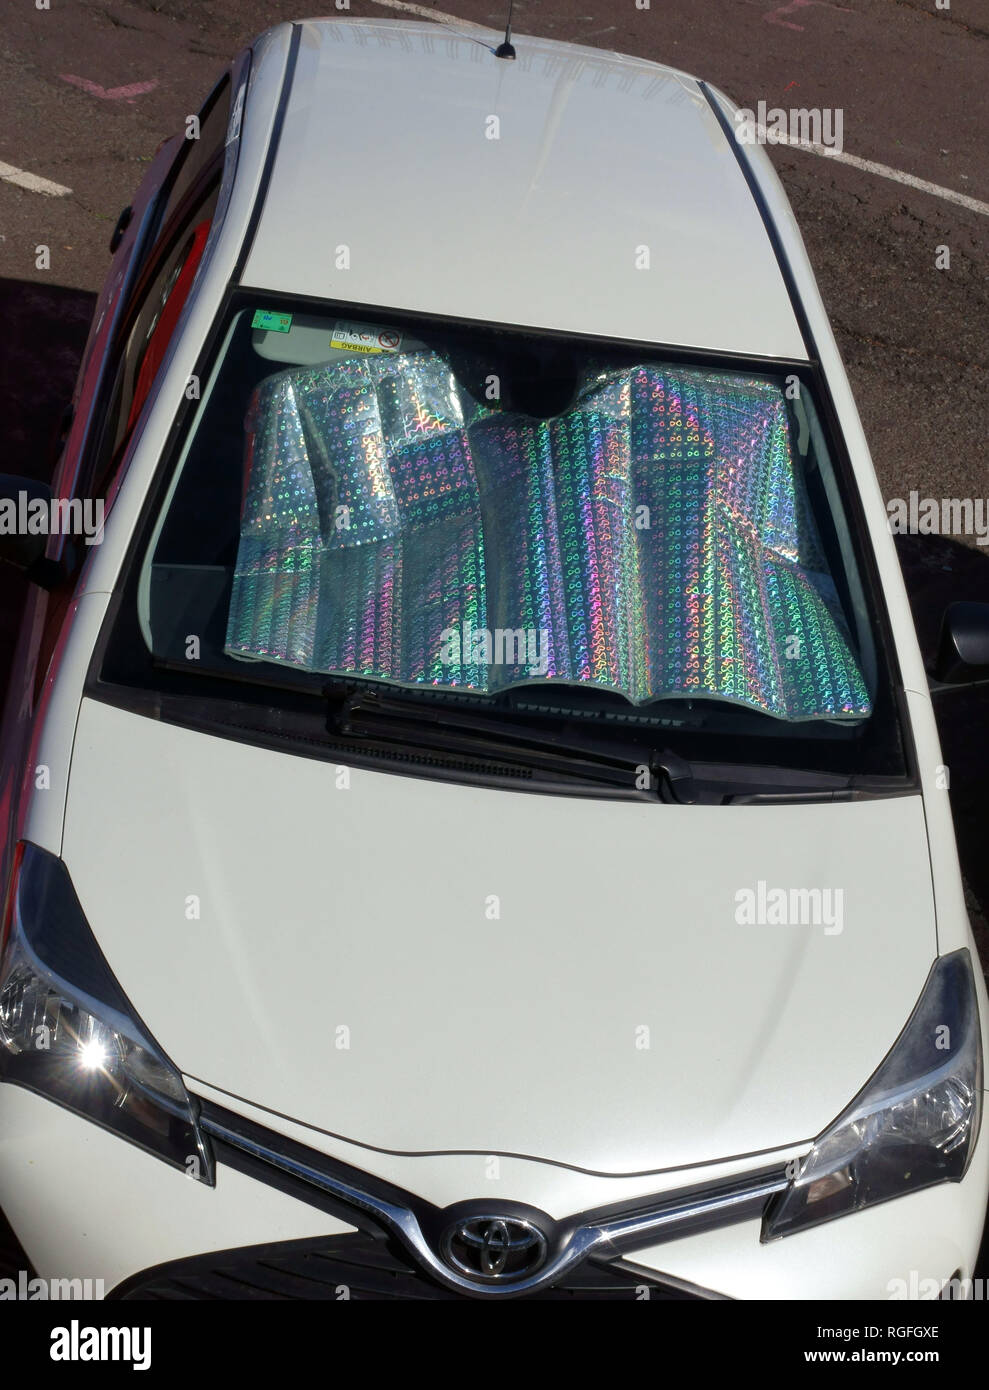 Auto Vor Sonnenschirm Fenster Film Windschutzscheibe Für Skoda